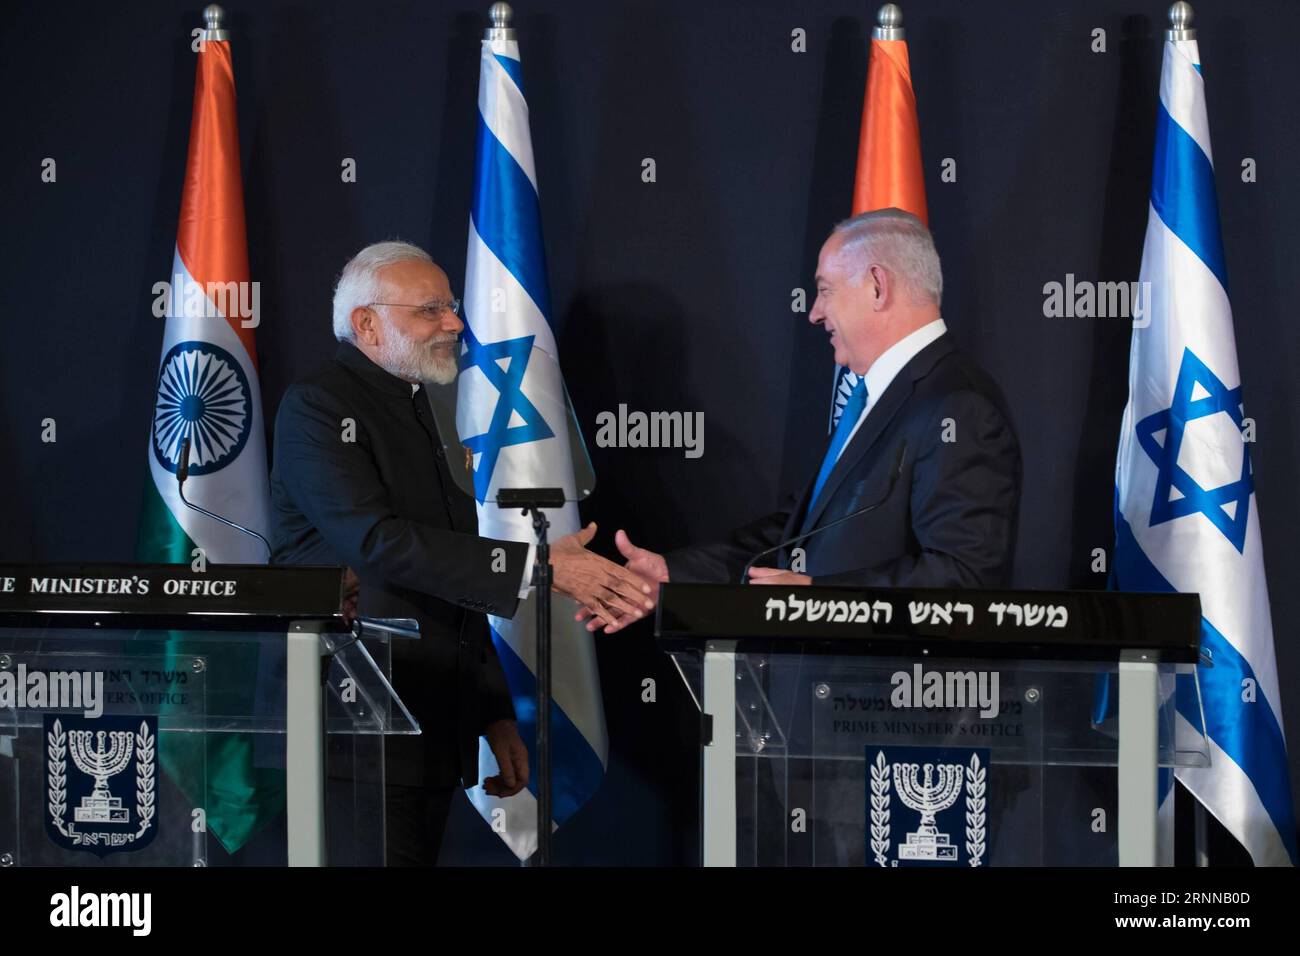 (170705) -- JÉRUSALEM, 5 juillet 2017 -- le Premier ministre israélien Benjamin Netanyahu (R) et son homologue indien Narendra Modi se serrent la main alors qu'ils assistaient à une conférence de presse conjointe à Jérusalem, le 5 juillet 2017. Le Premier ministre indien Narendra Modi a débarqué en Israël mardi pour la toute première visite d'un Premier ministre indien dans le pays, dans le but de renforcer les liens globaux. (djj) MIDEAST-JÉRUSALEM-ISRAËL-INDE-PM-ÉCHANGE D'ACCORDS GuoxYu PUBLICATIONxNOTxINxCHN Jérusalem juillet 5 2017 les premiers ministres israéliens Benjamin Netanyahu r et sa partie indienne Narendra modes secouent les mains alors qu'ils assistent à un J Banque D'Images